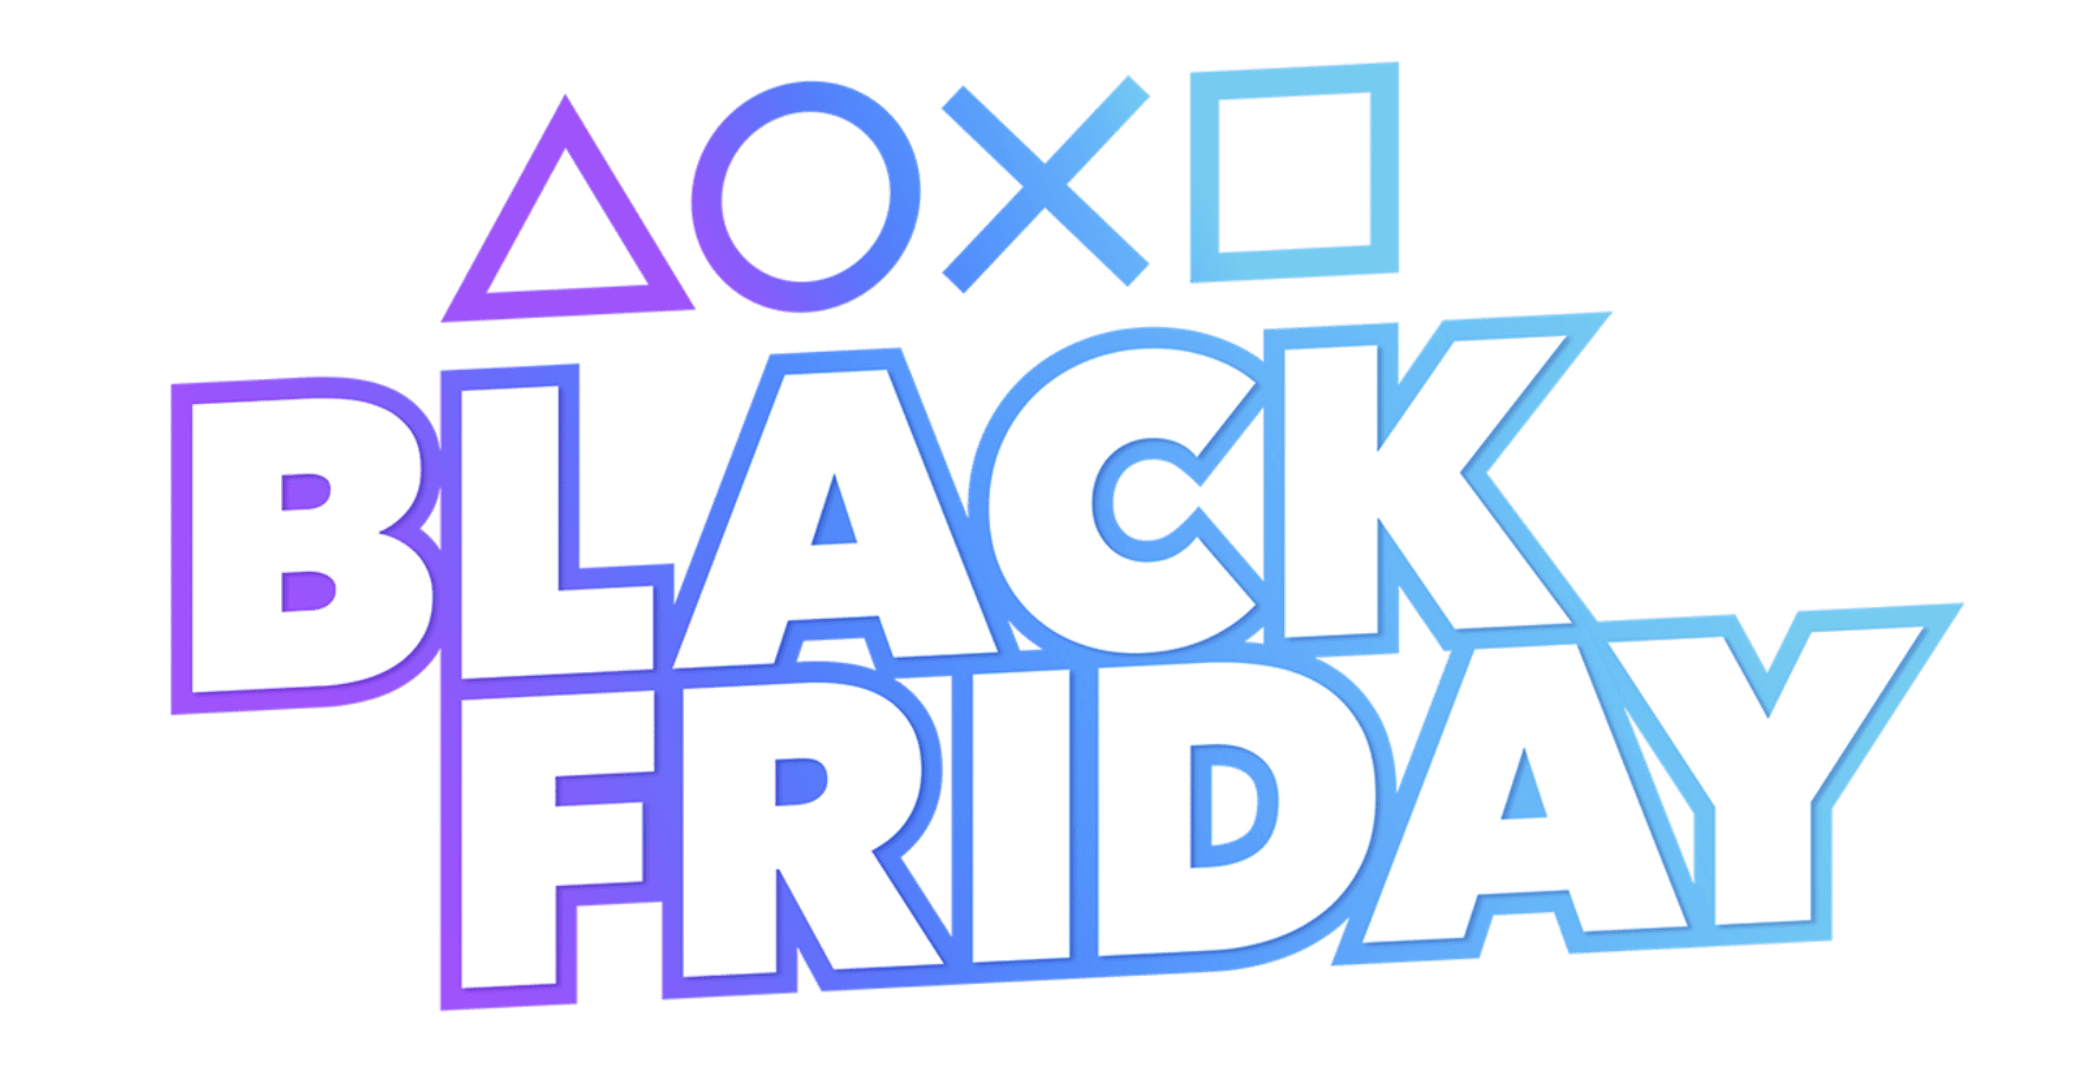 PlayStation Black Friday 2021 deals